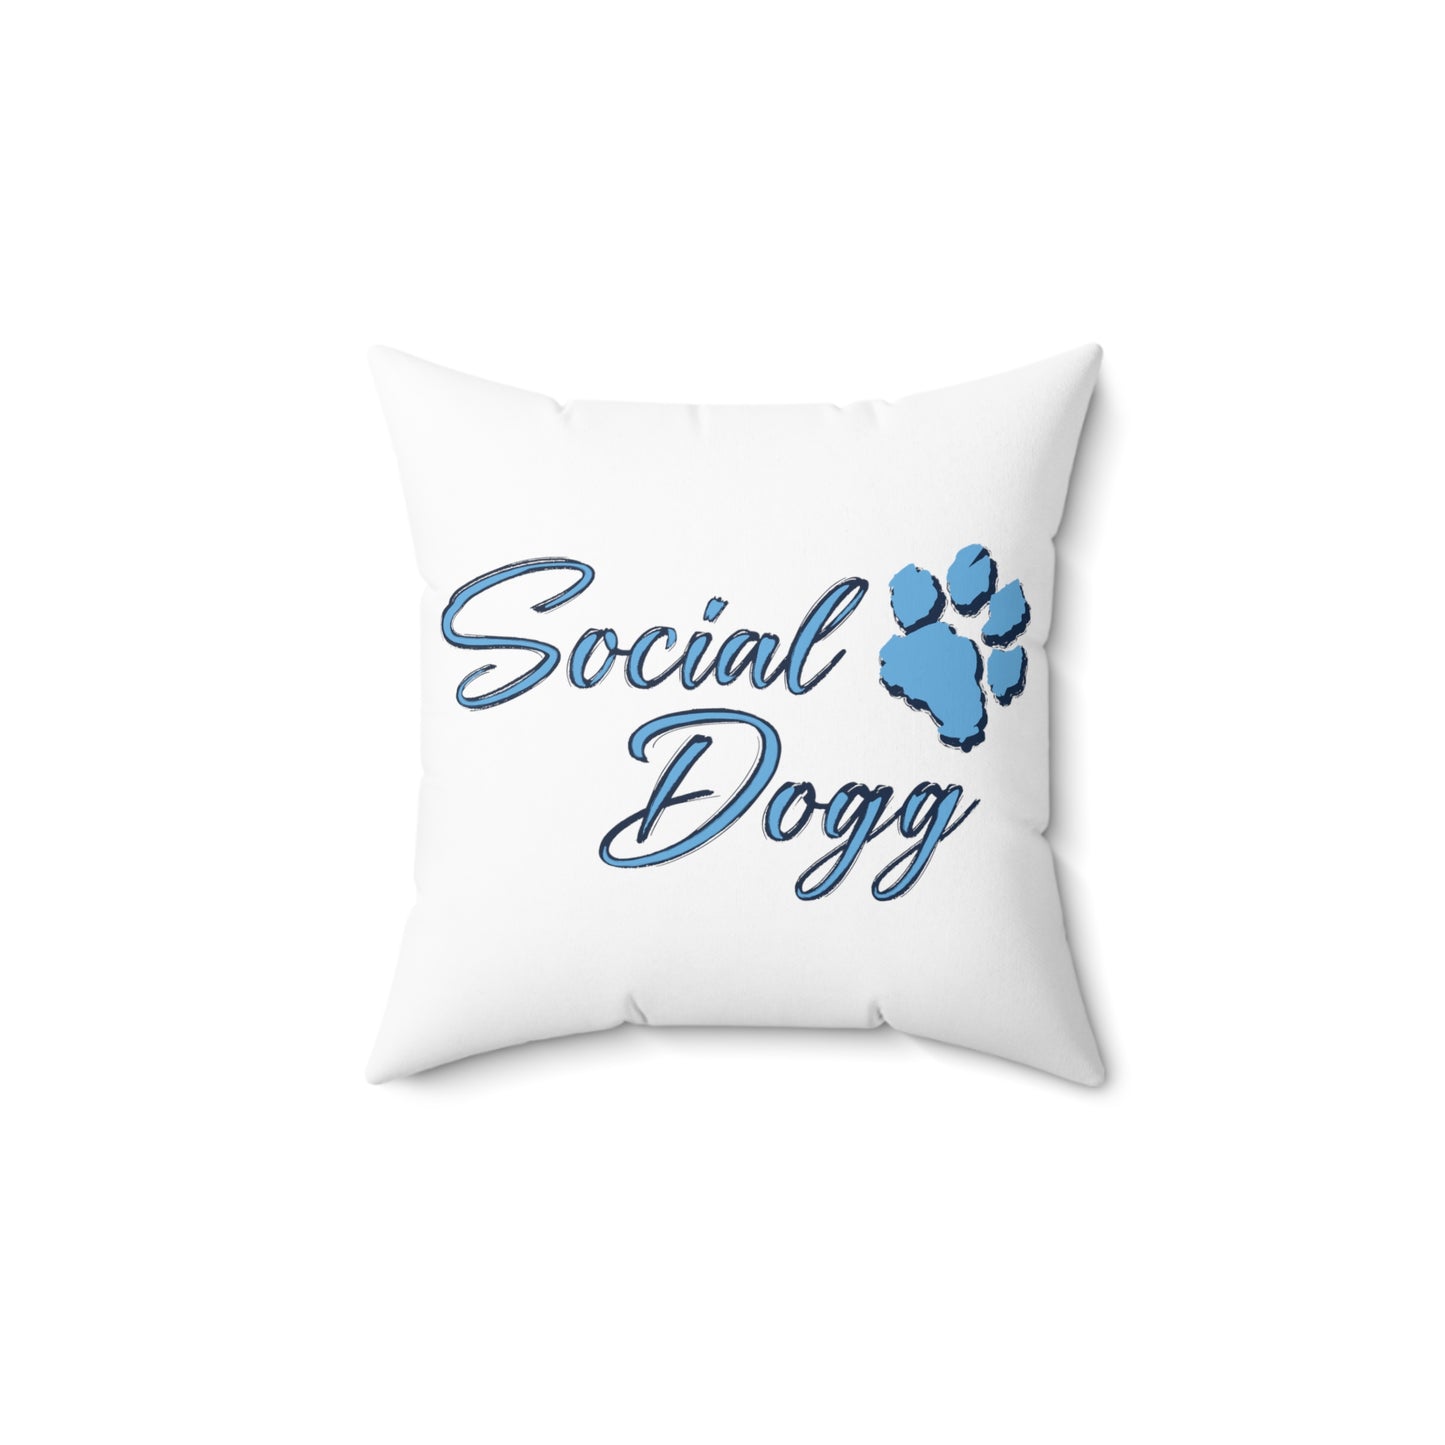 Poodle Perfection - Elegant Poodle Decorative Pillow